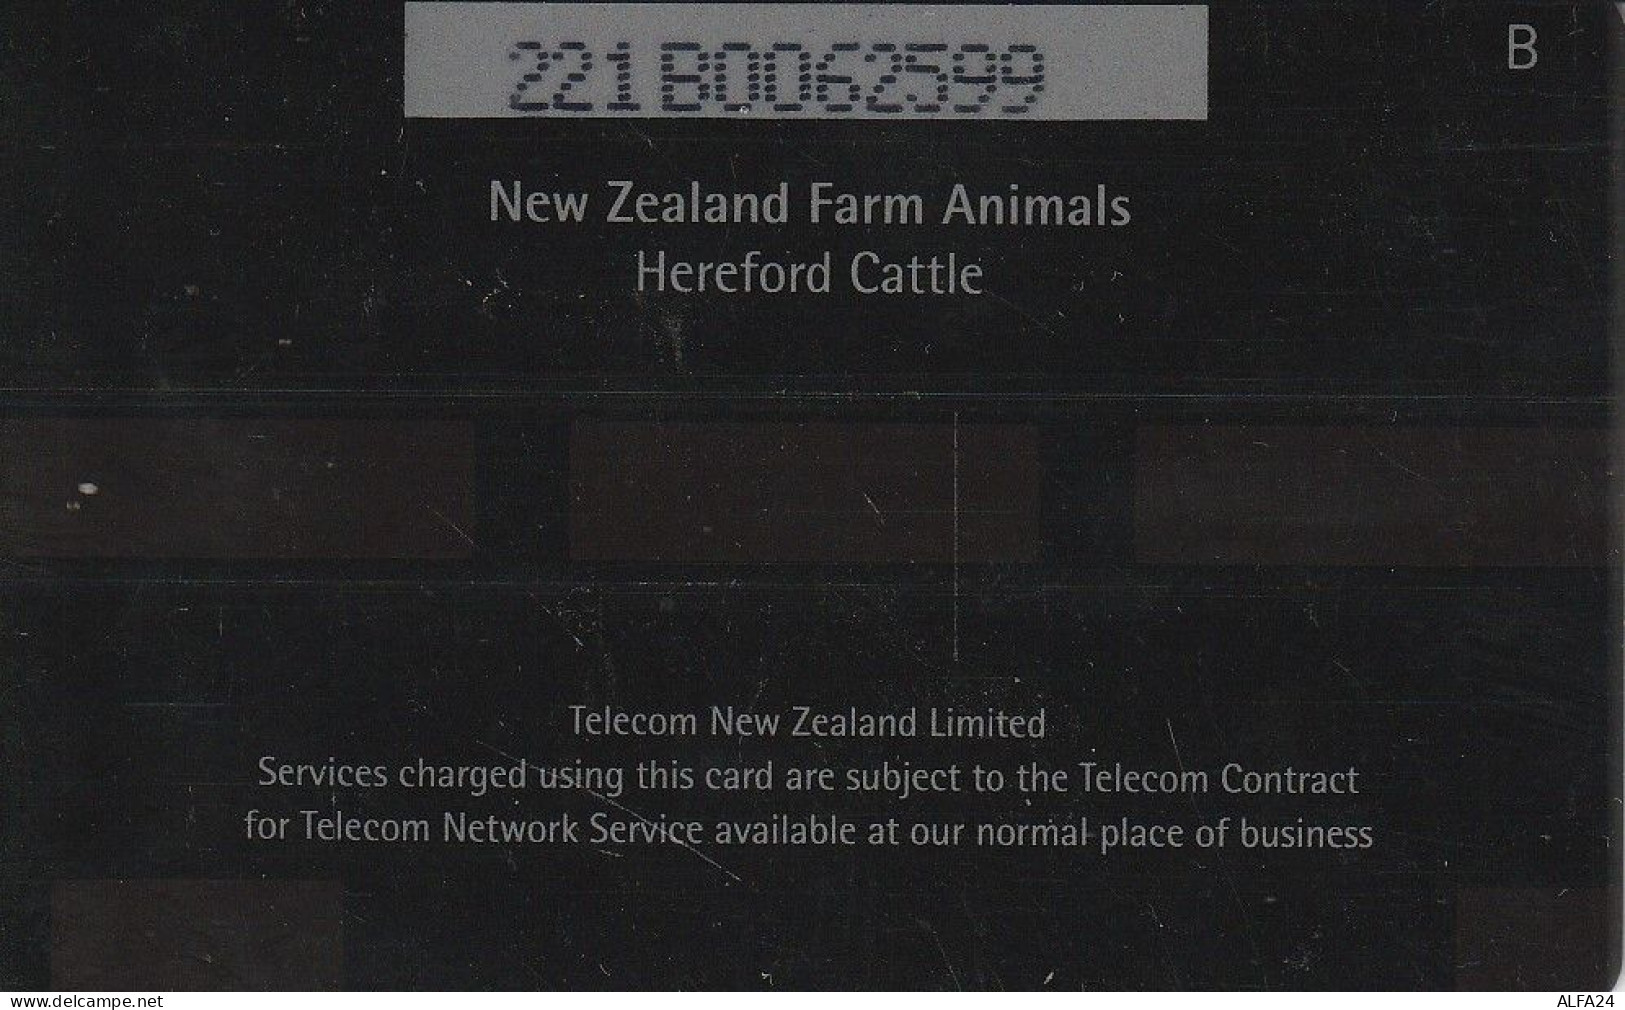 PHONE CARD NUOVA ZELANDA  (CZ2345 - Neuseeland